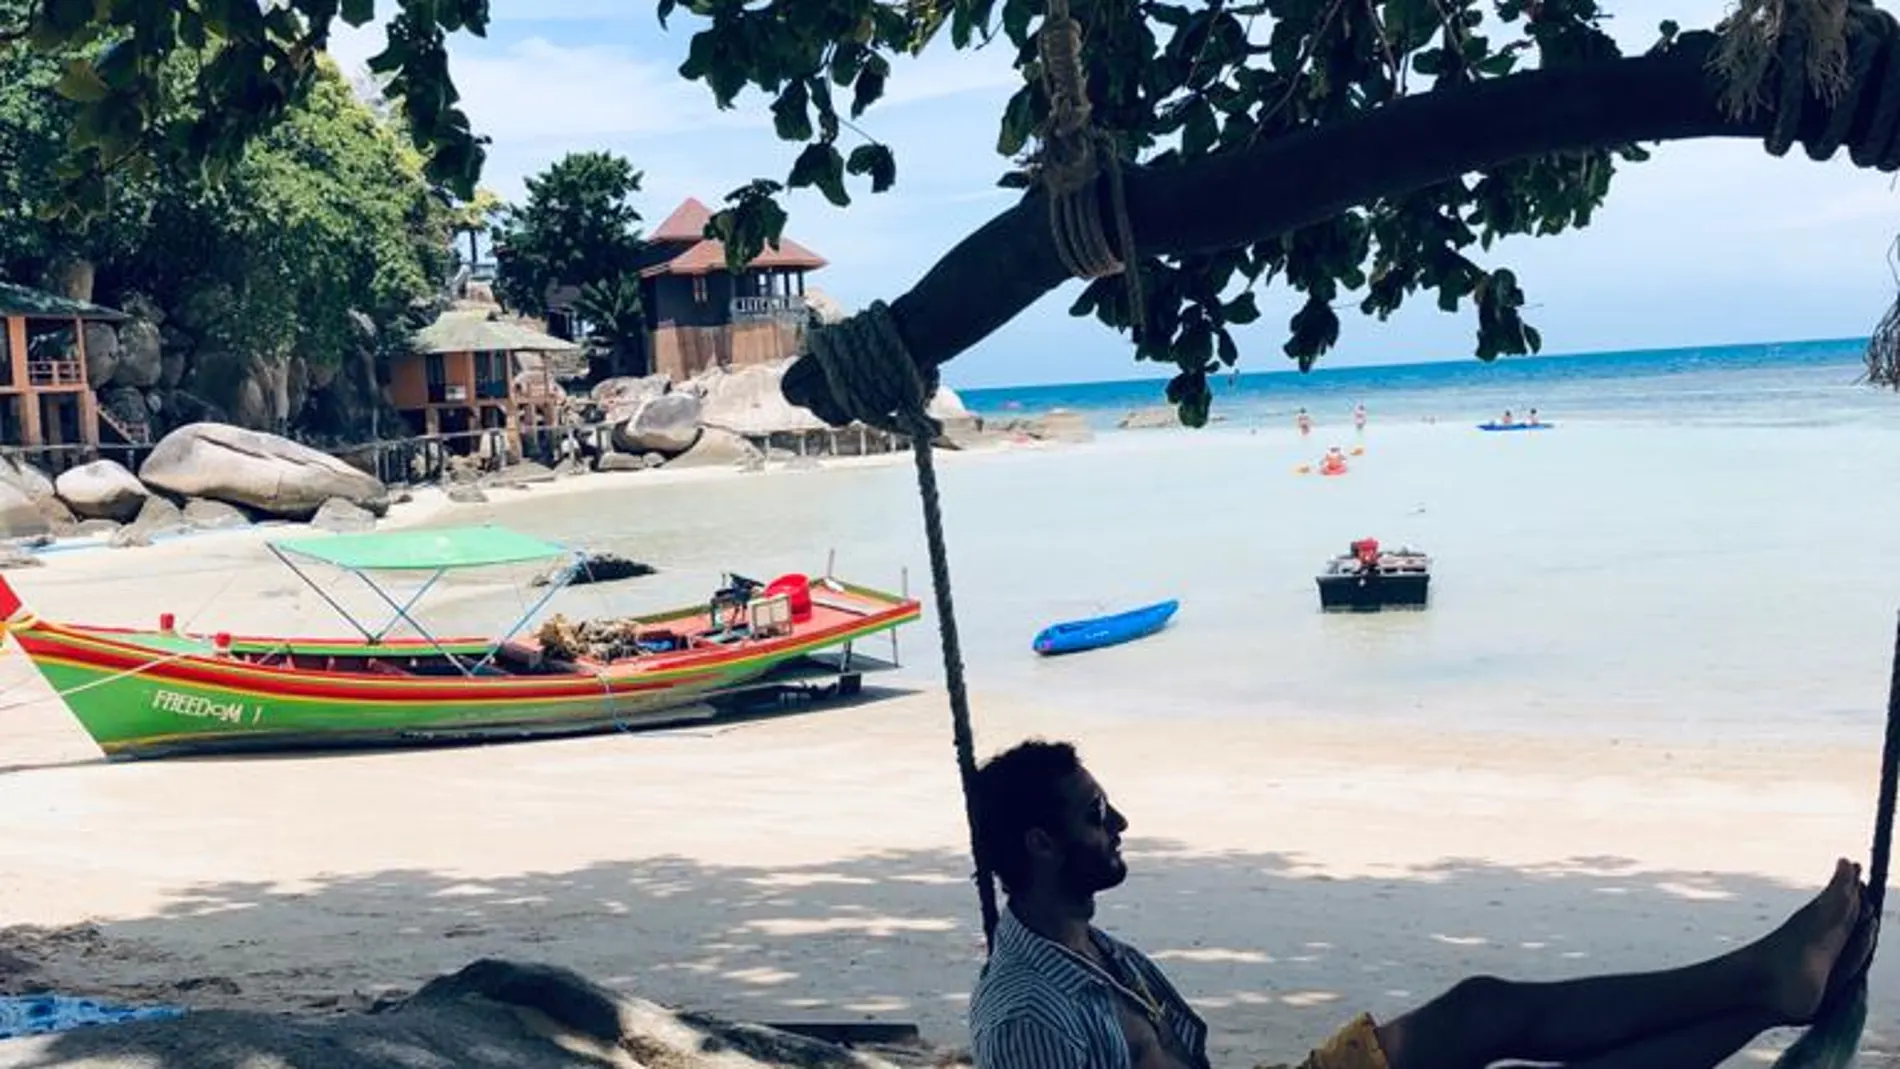 El actor Eduardo Rosa disfrutando de sus vacaciones en las playas de Cuba, el verano de 2019. «El encanto de viajar, que es algo que a mí me apasiona», asegura.